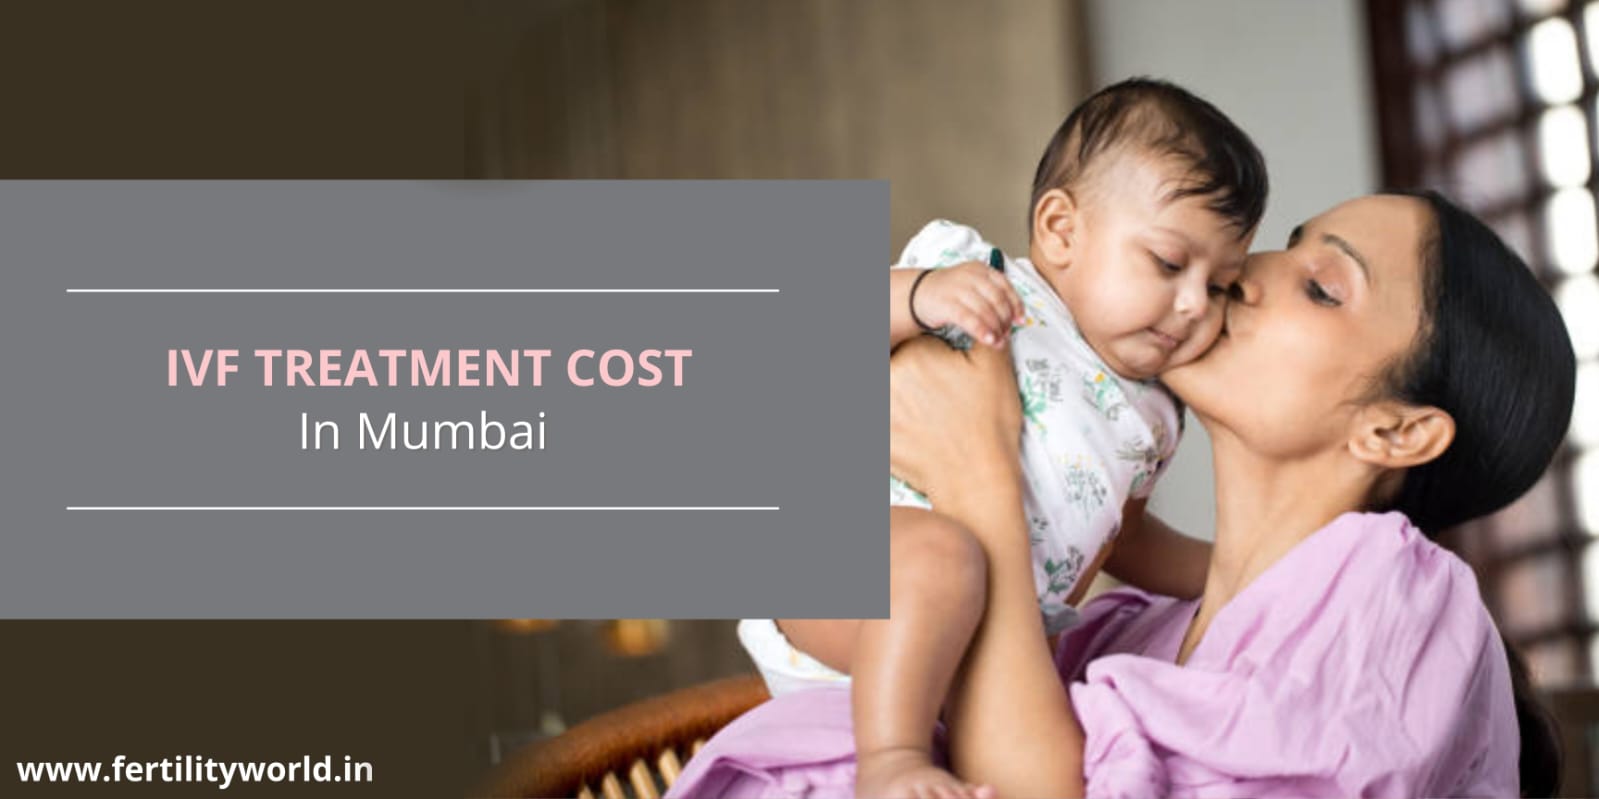 IVF Treatment cost in Mumbai